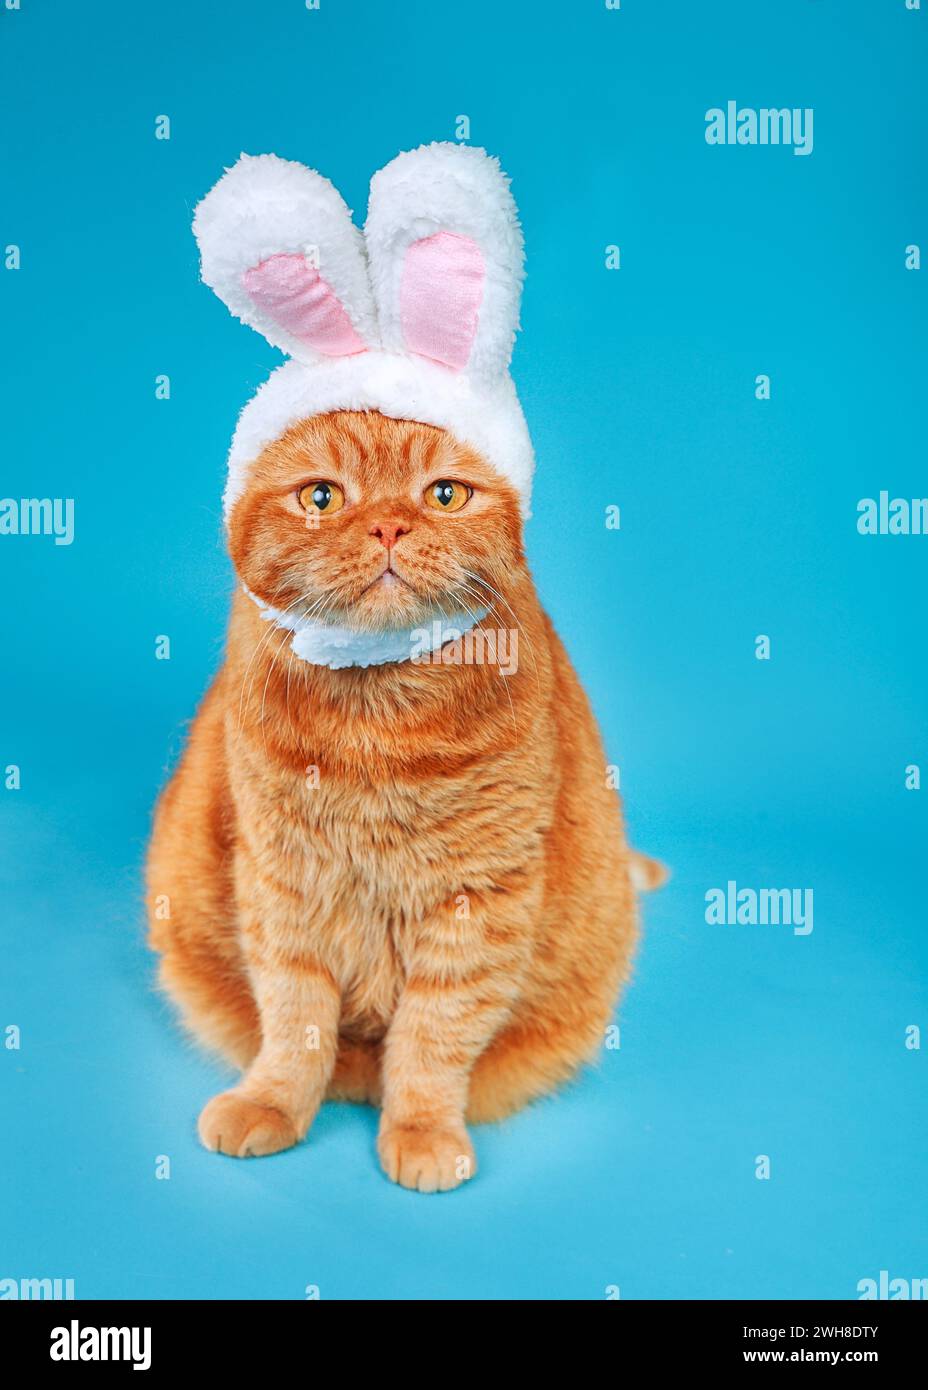 Drôle de chat de gingembre britannique est assis portant un chapeau mignon avec des oreilles de lapin sur fond bleu de studio. Lapin de Pâques Banque D'Images